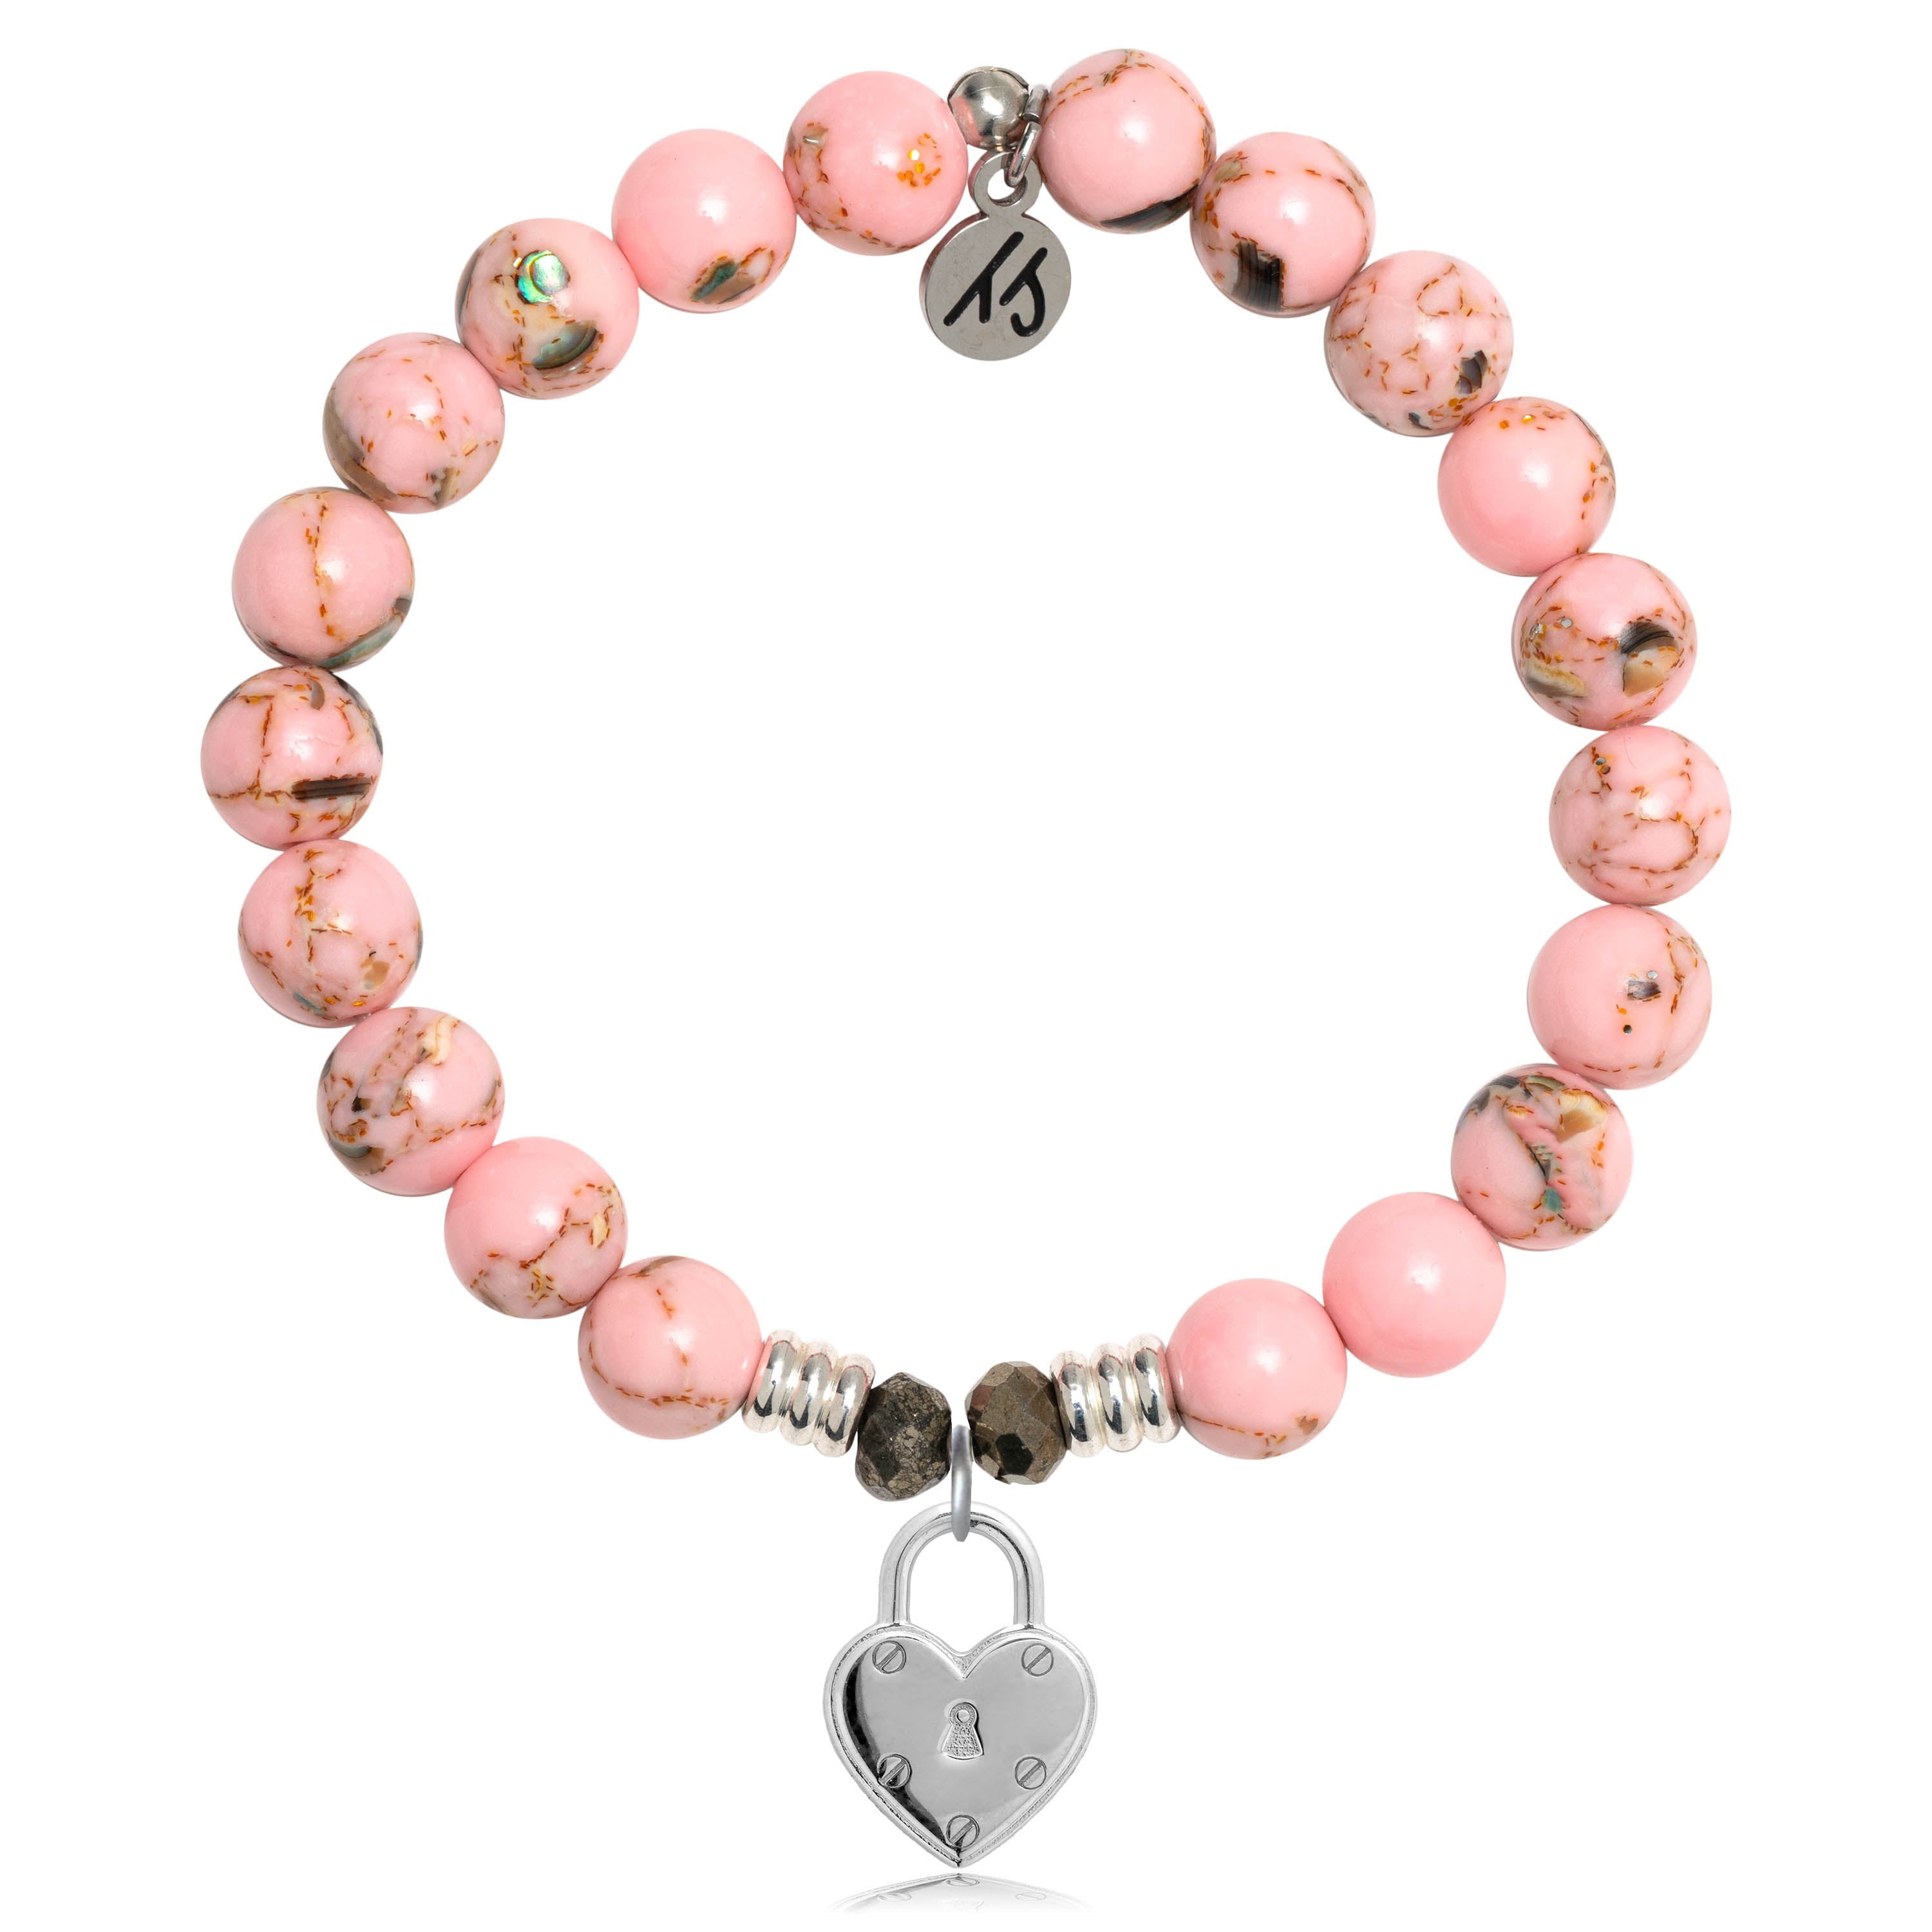 Heart Lock Bracelet And Key Necklace – BigBeryl